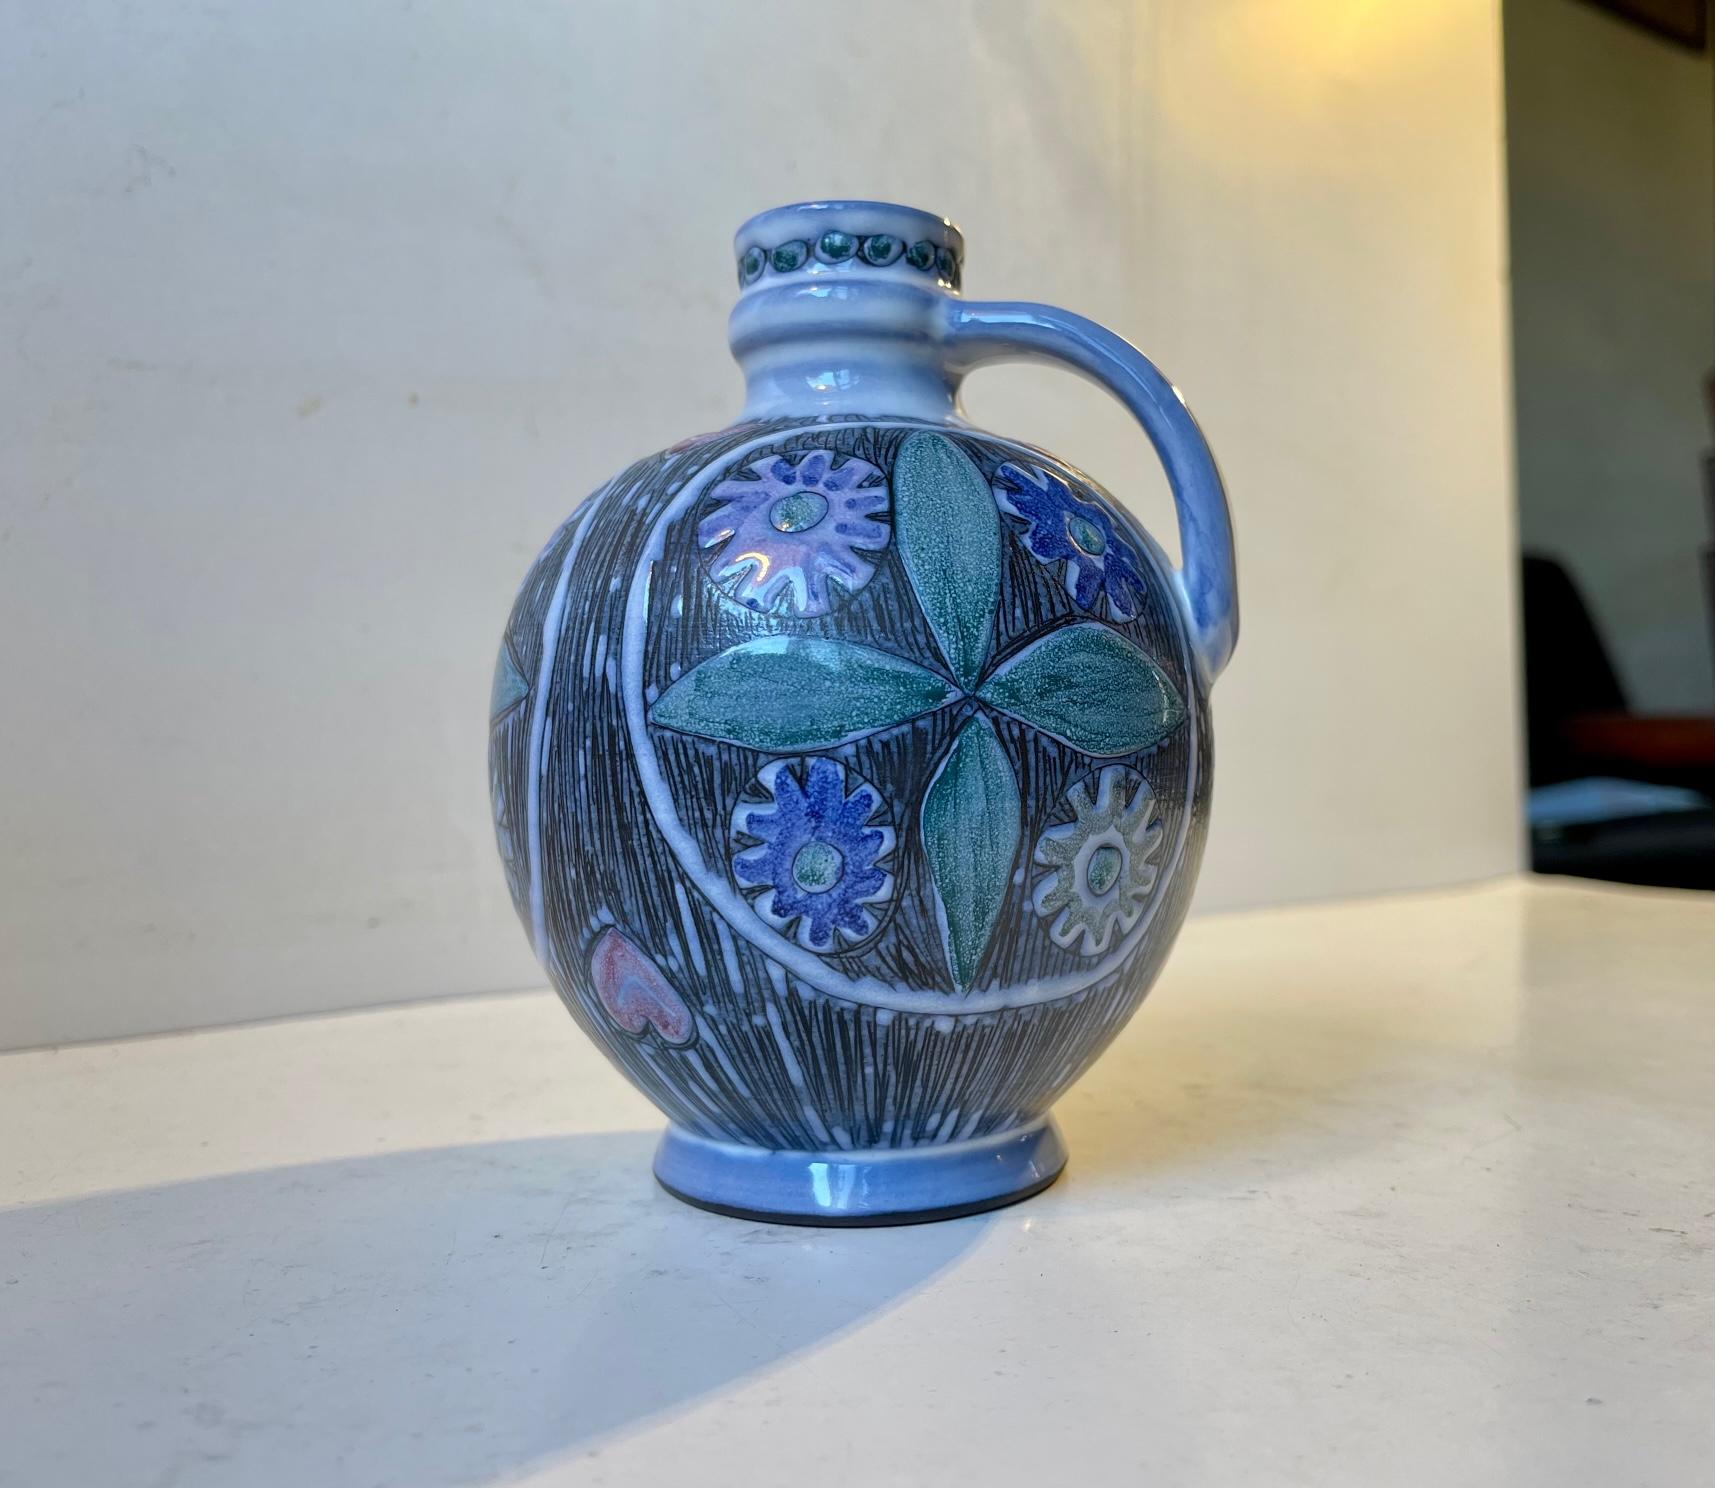 Vase pichet décoré de Sgrafitto du Studio Laholm en Suède. Émaux polychromes. Signé/marqué. Fabriqué en studio vers 1960-65. Mesures : H : 14 cm, P : 11 cm.